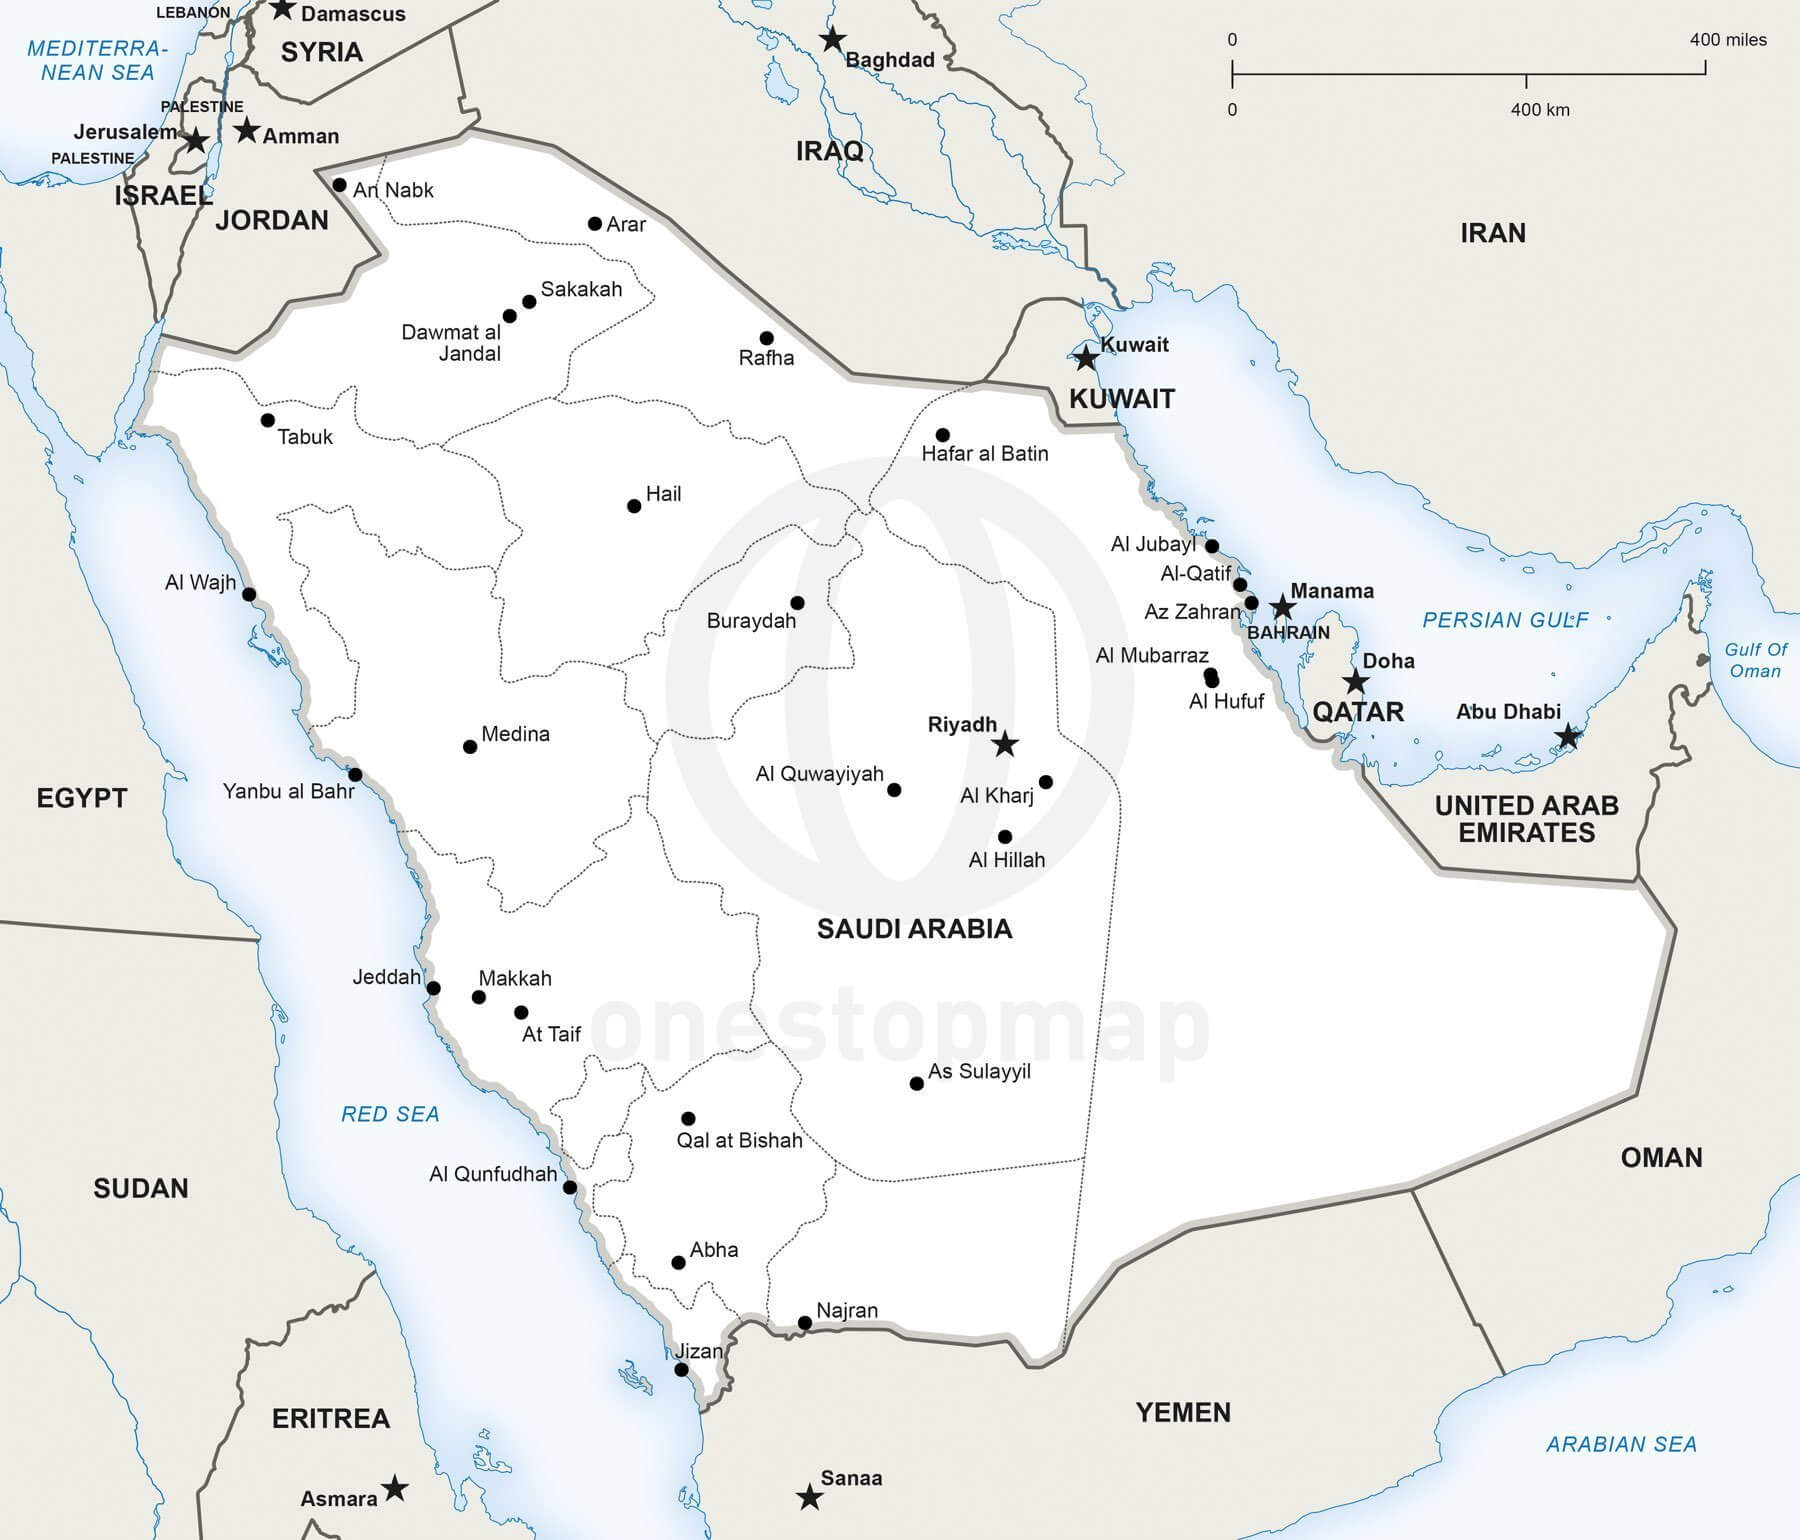 Saudi Arabia Map Vector Free